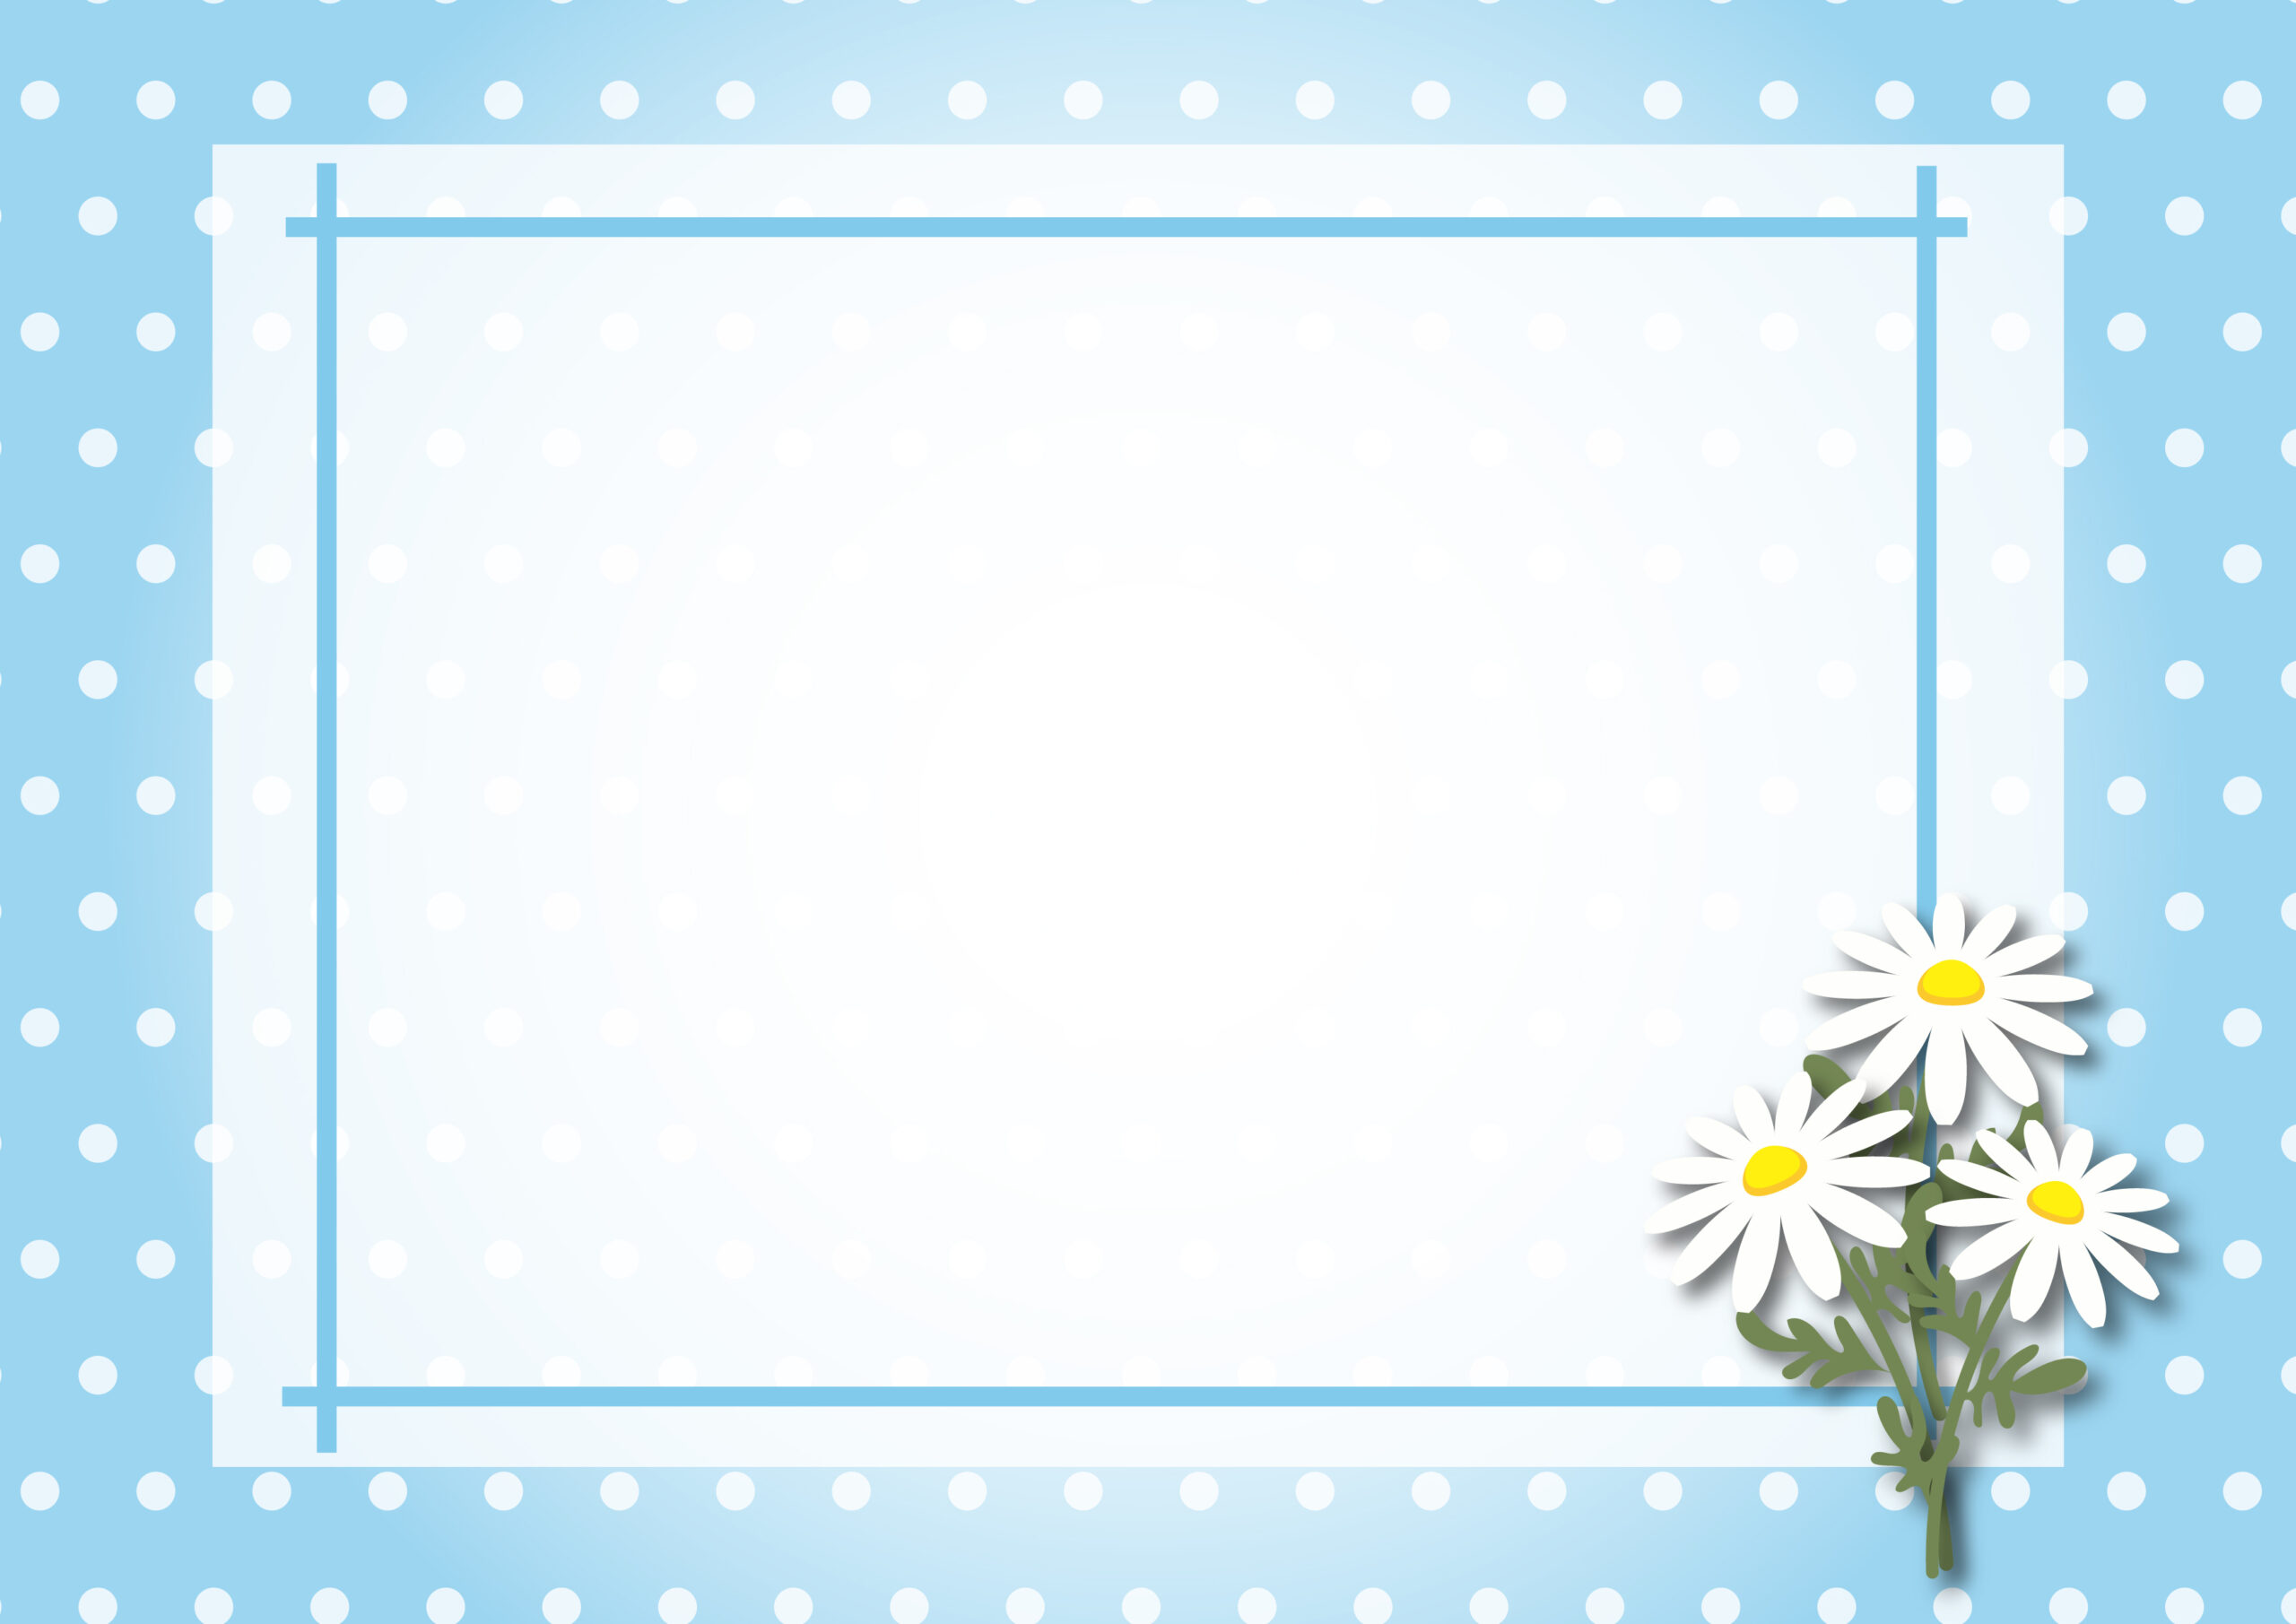 お花屋さんのメッセージカードにおすすめ！花に添えて一緒に贈るメッセージカードの台紙のご利用にいかがでしょうか。かわいい水玉模様の背景で、マーガレットの花のイラスト入りとなり、爽やかな水色デザインで、夏のカードにおすすめです。ダ